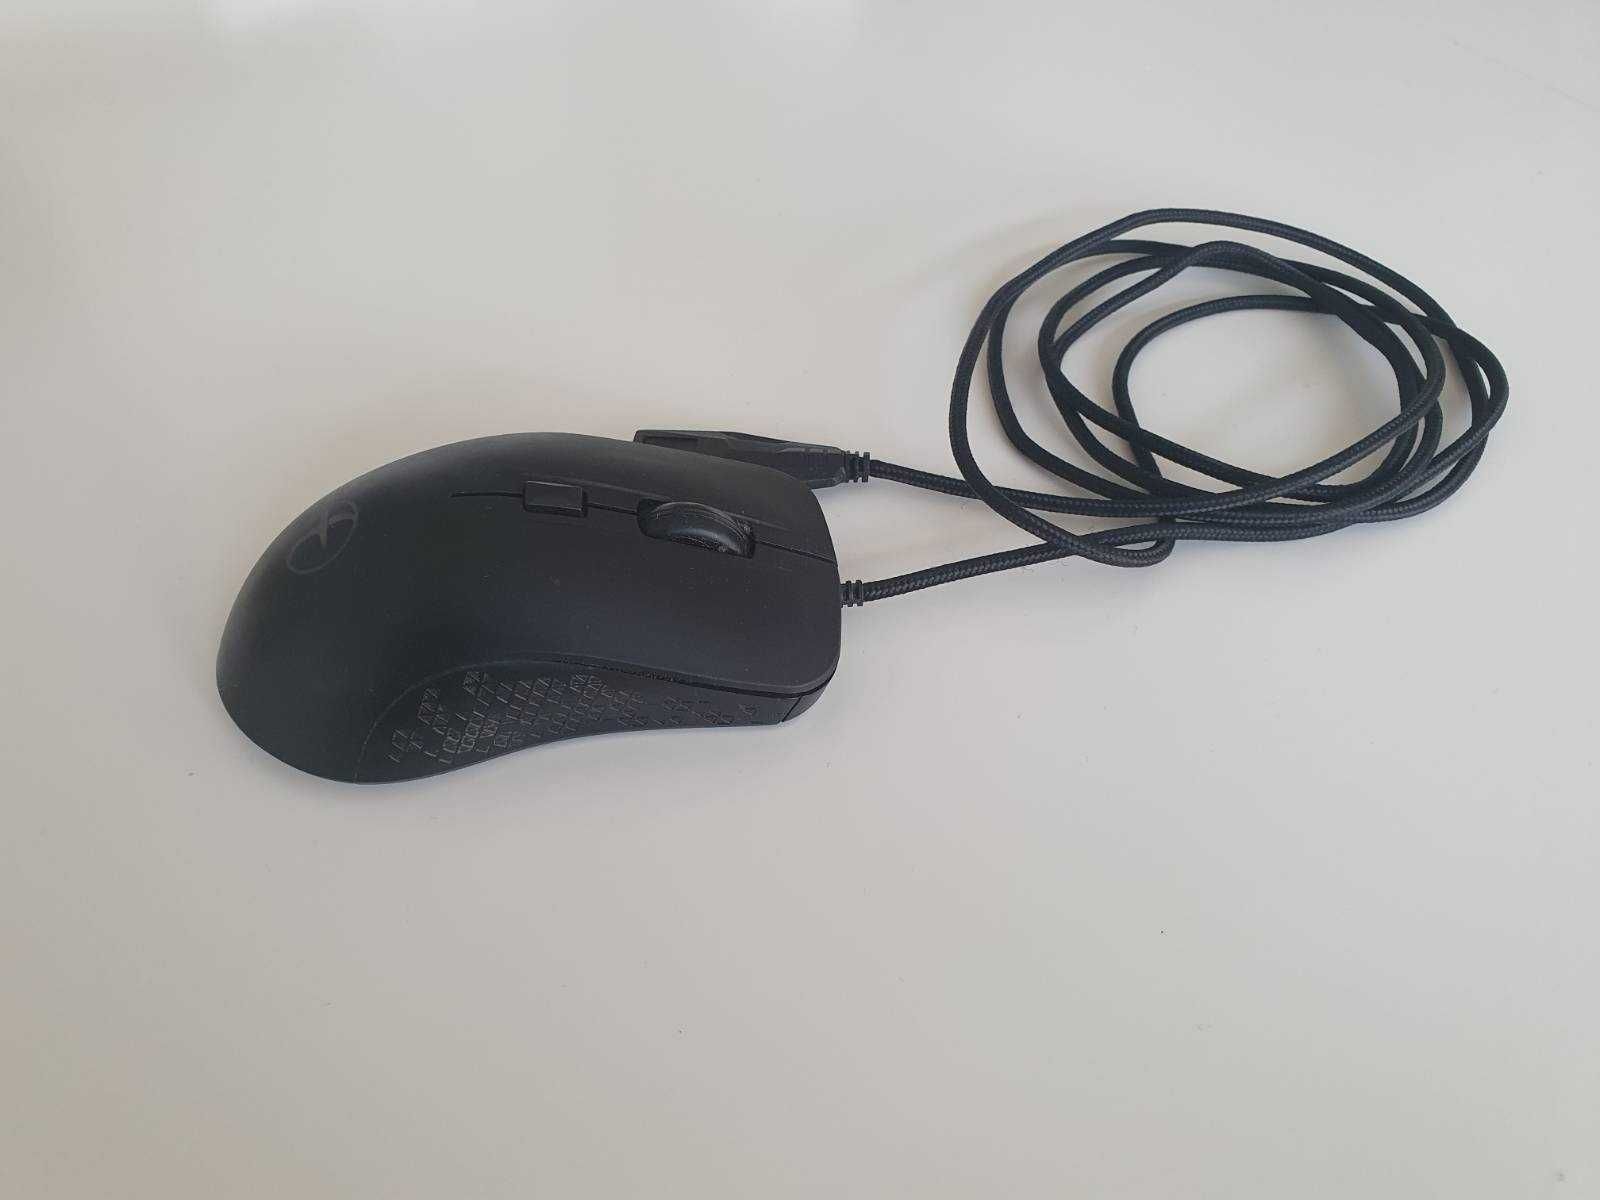 Podgrzewana czarna myszka komputerowa USB